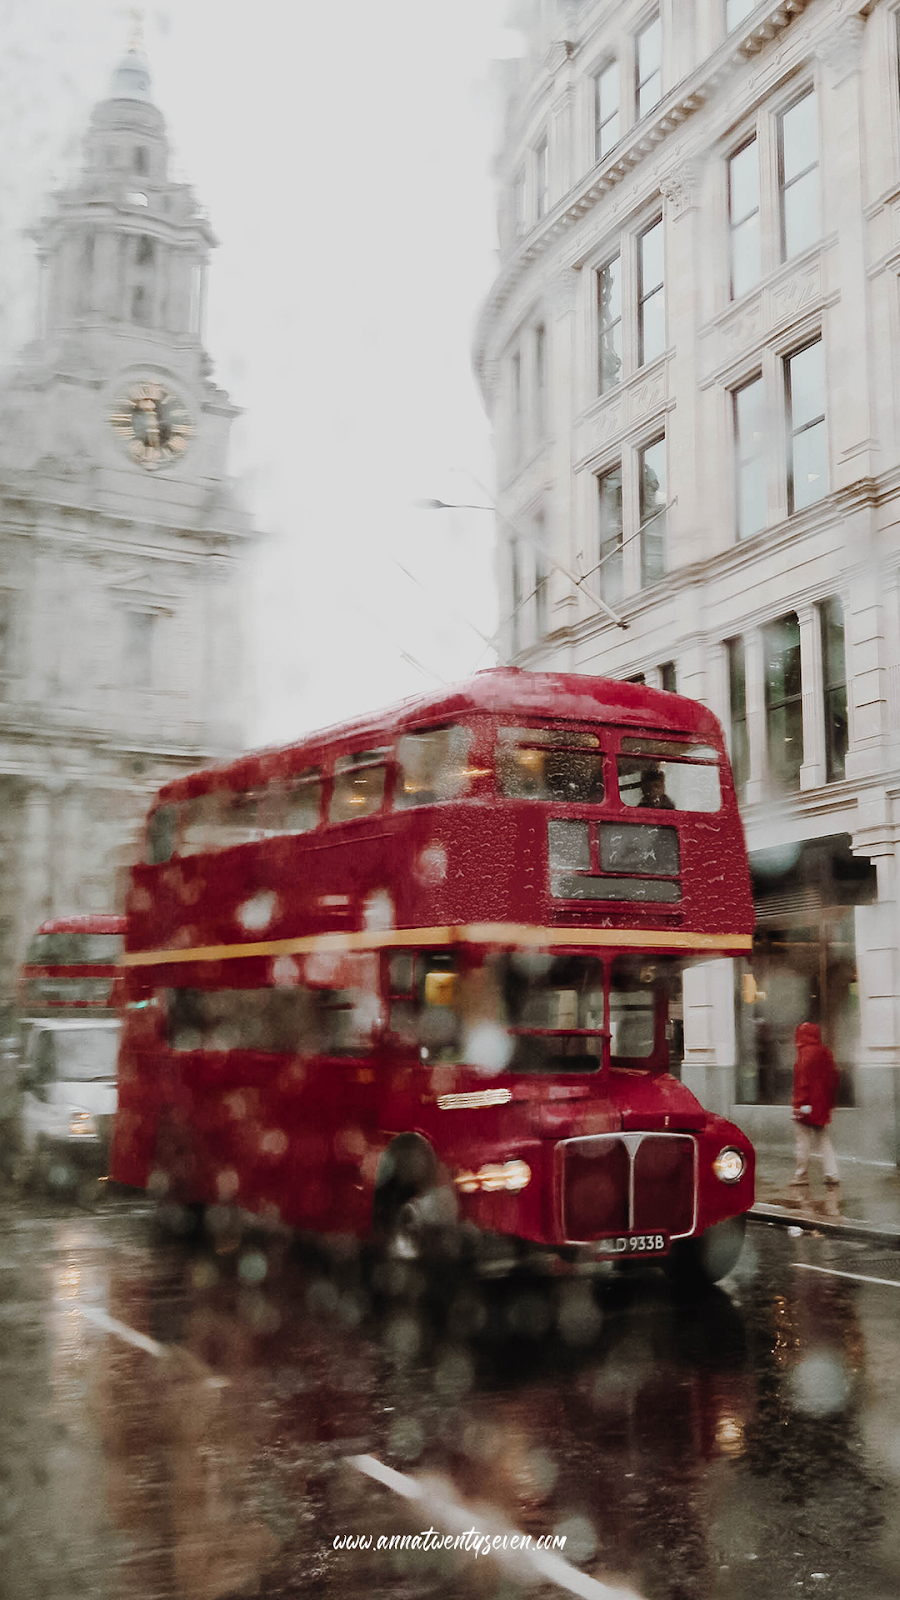 LONDON BUS. ANNA TWENTY SEVEN. London wallpaper, London rain, London bus